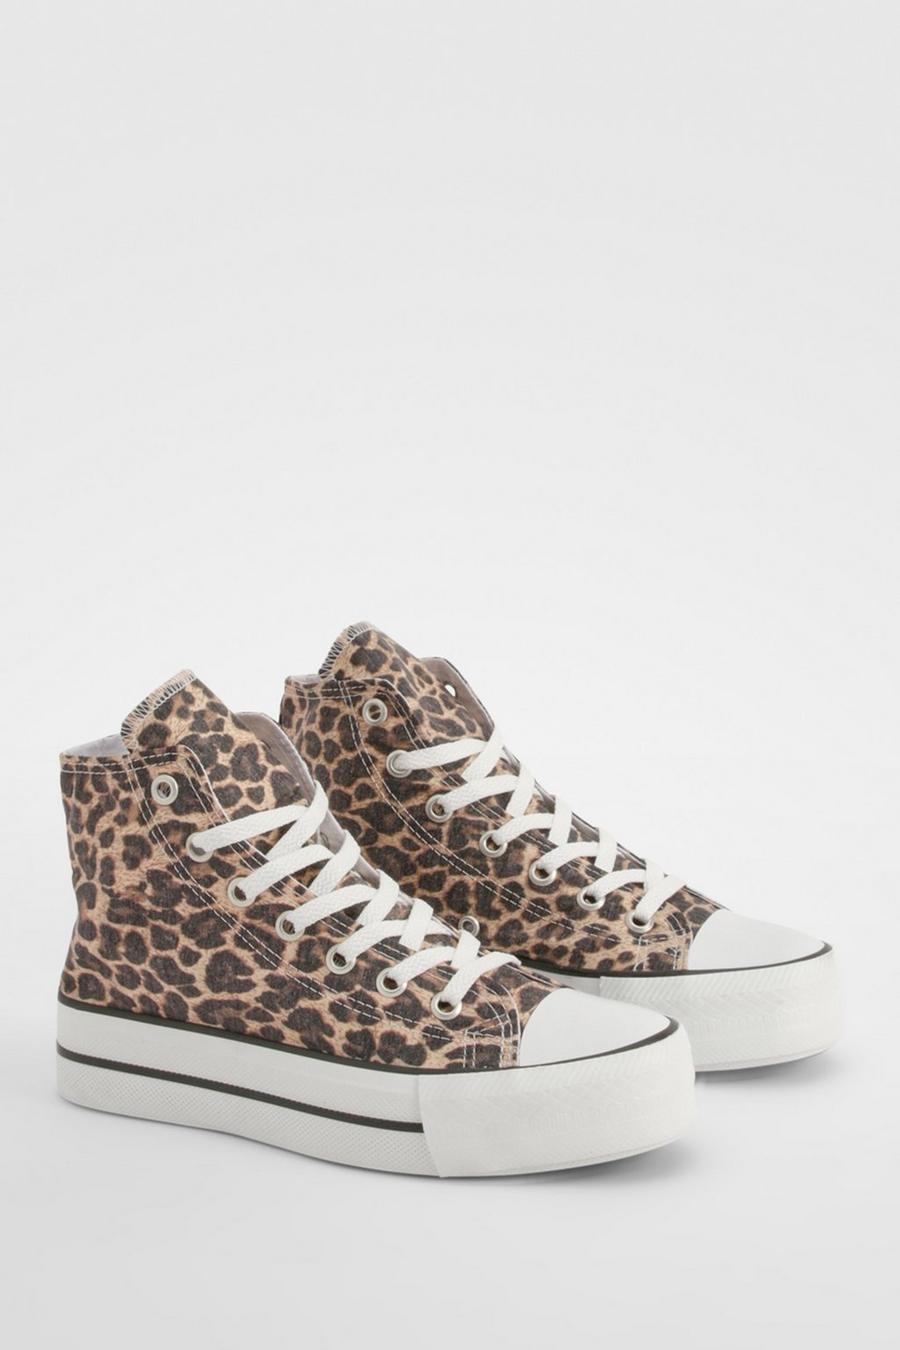 Zapatillas deportivas altas con estampado de leopardo, Leopard